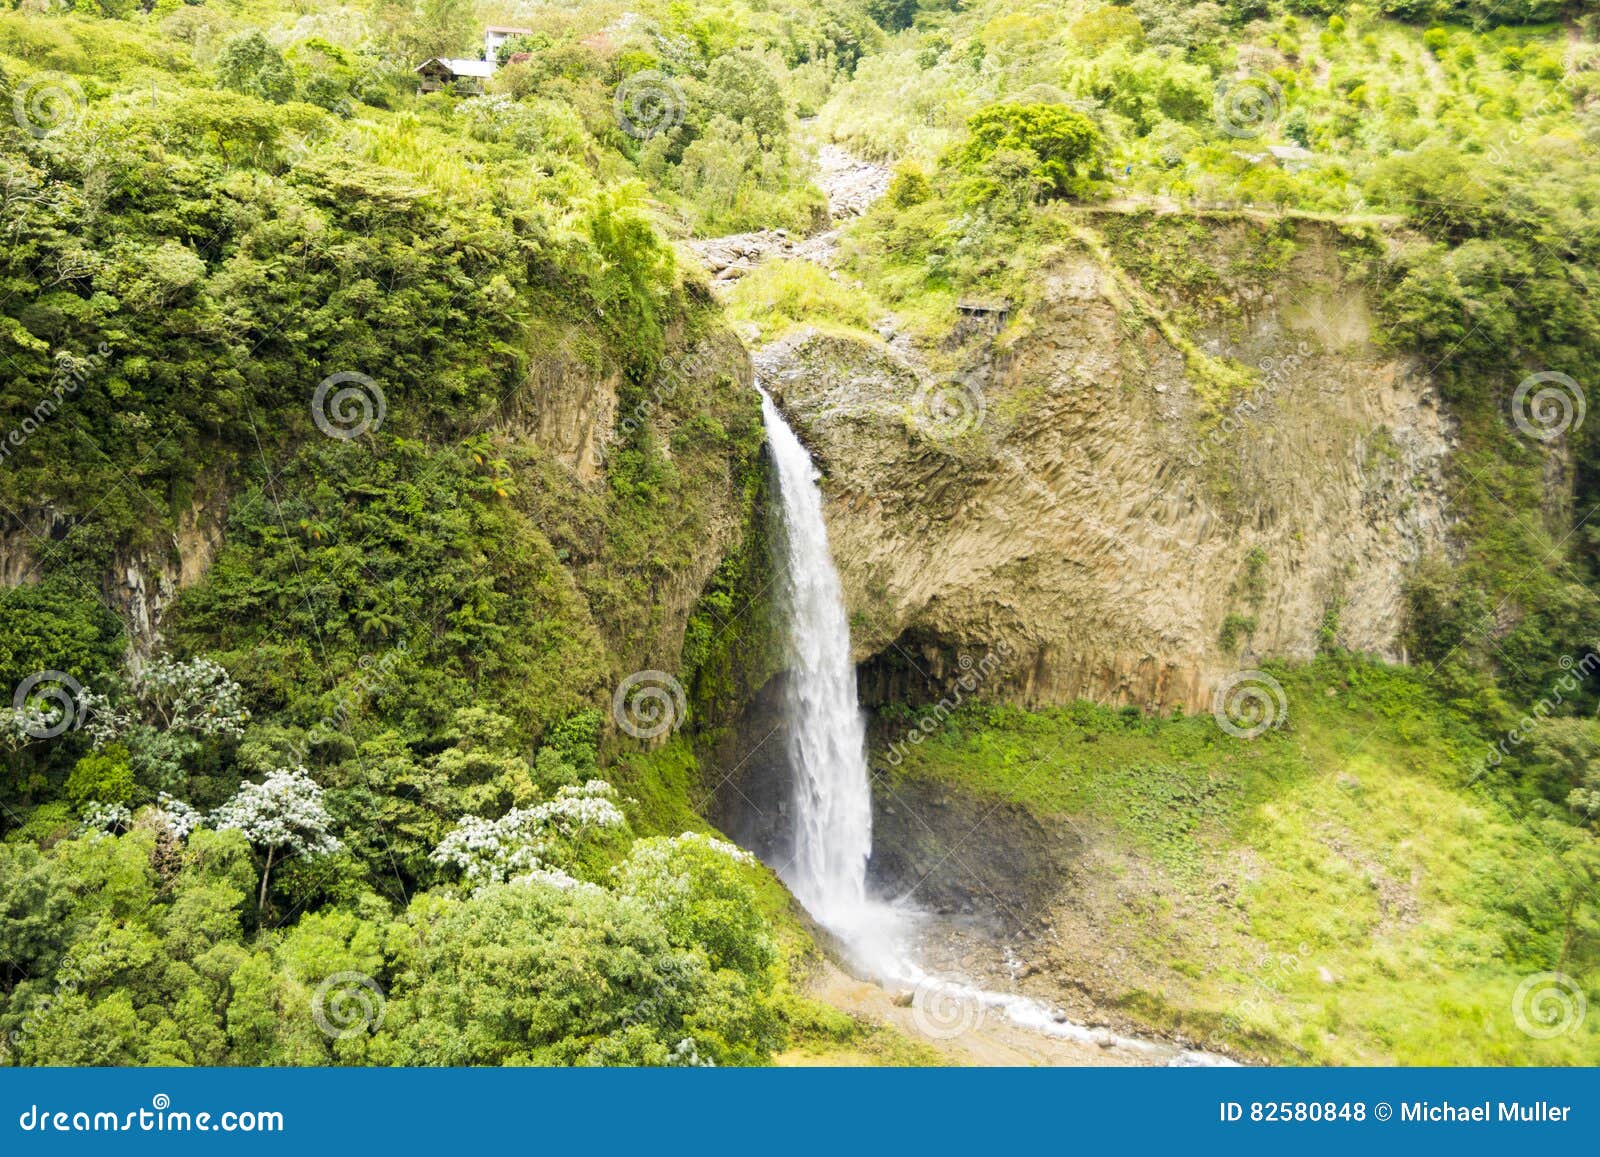 manto de la novia waterfall in the andean mountains